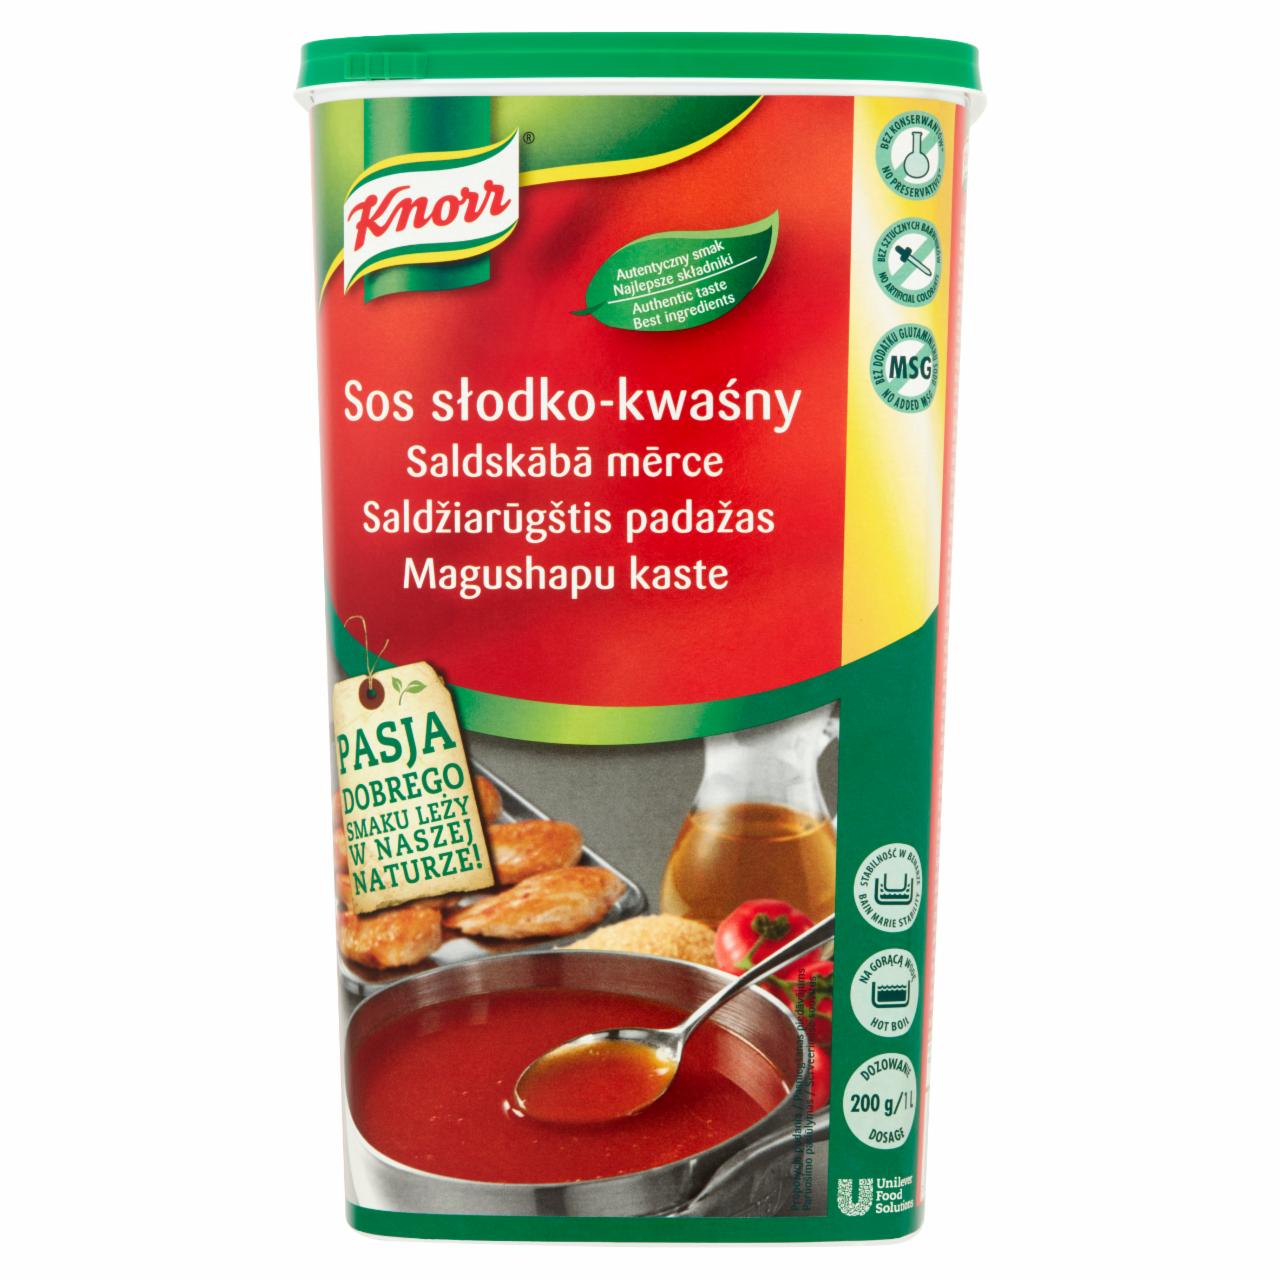 Zdjęcia - Knorr Sos słodko-kwaśny 1,5 kg